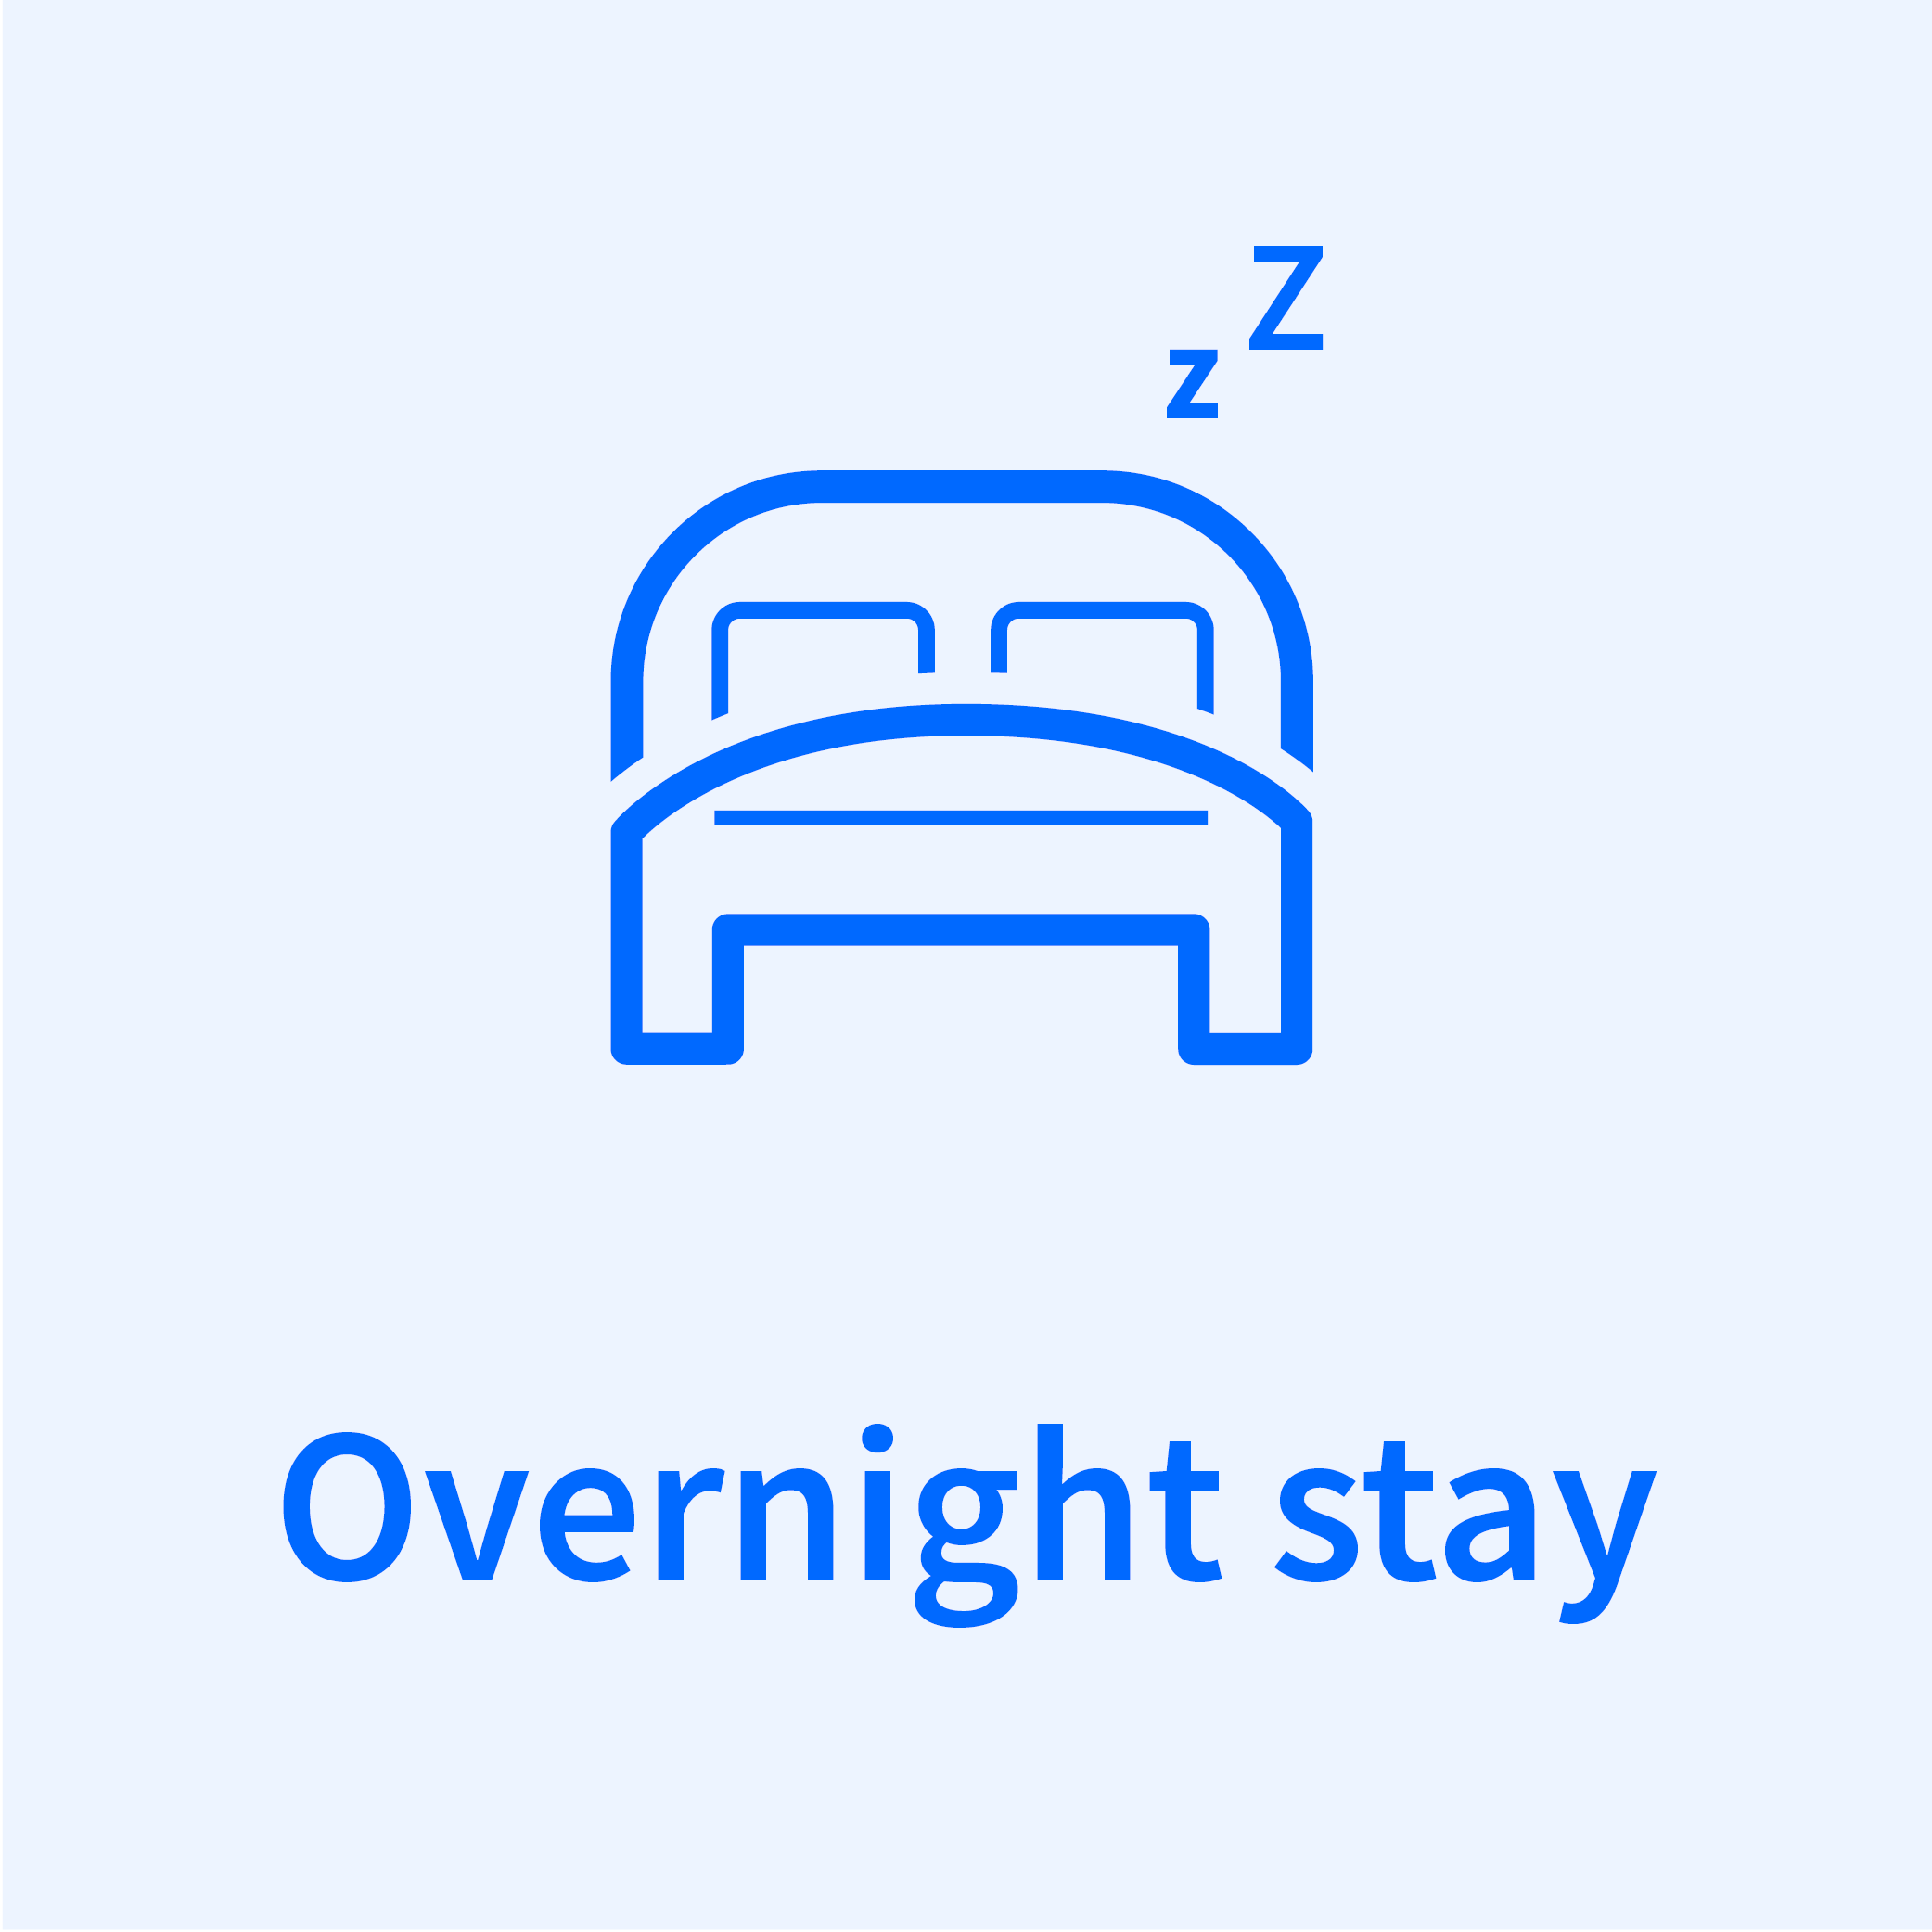 Overnight stay